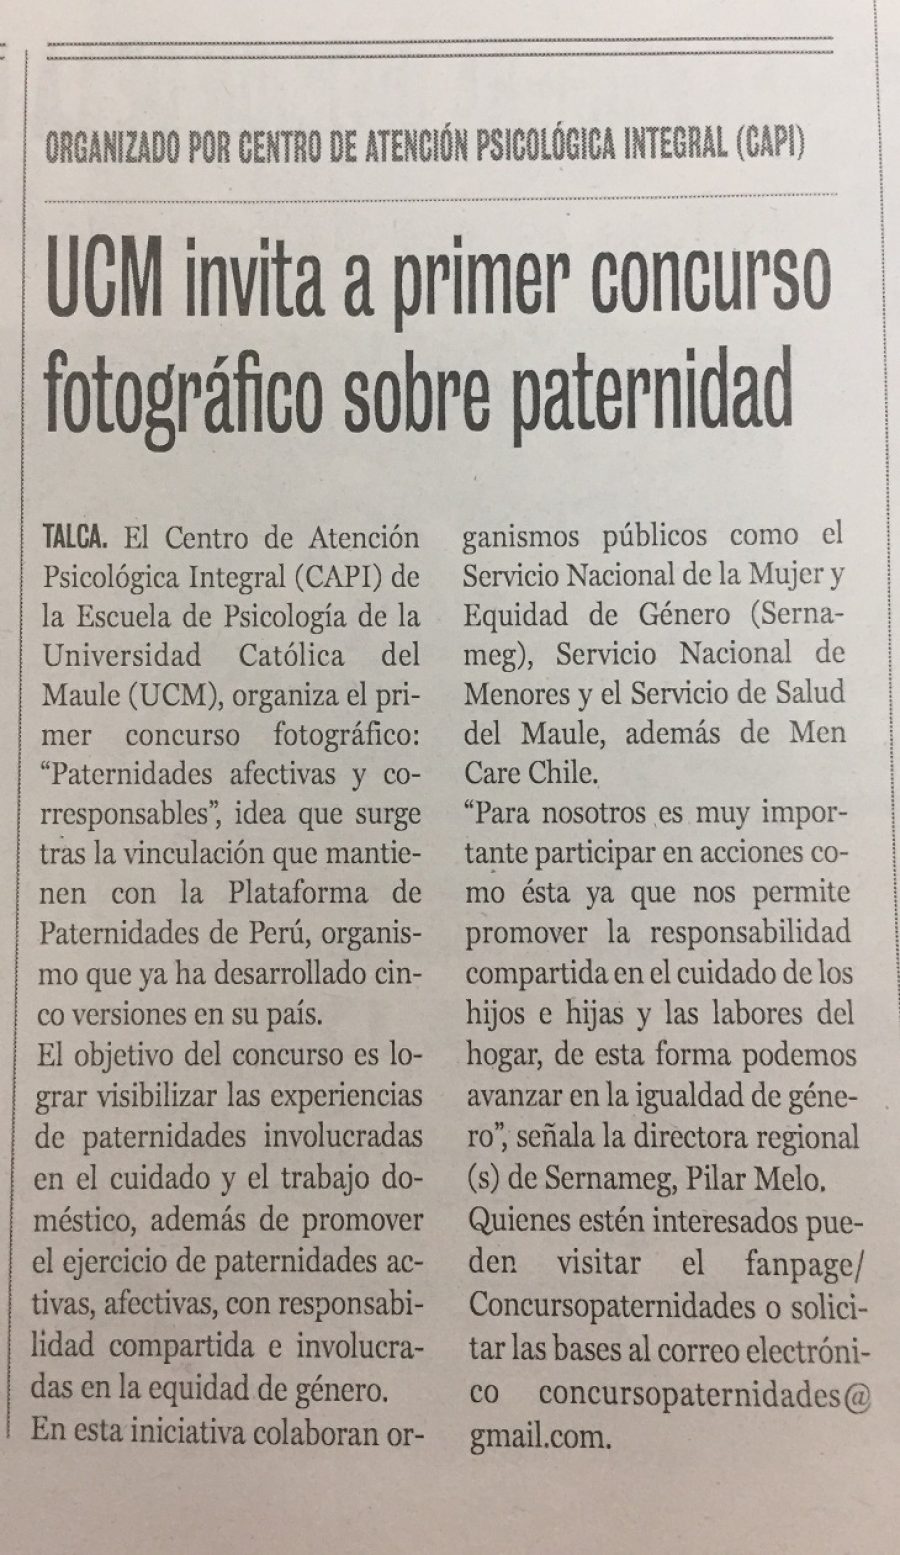 24 de junio en Diario La Prensa: “UCM invita a primer concurso fotográfico sobre paternidad”